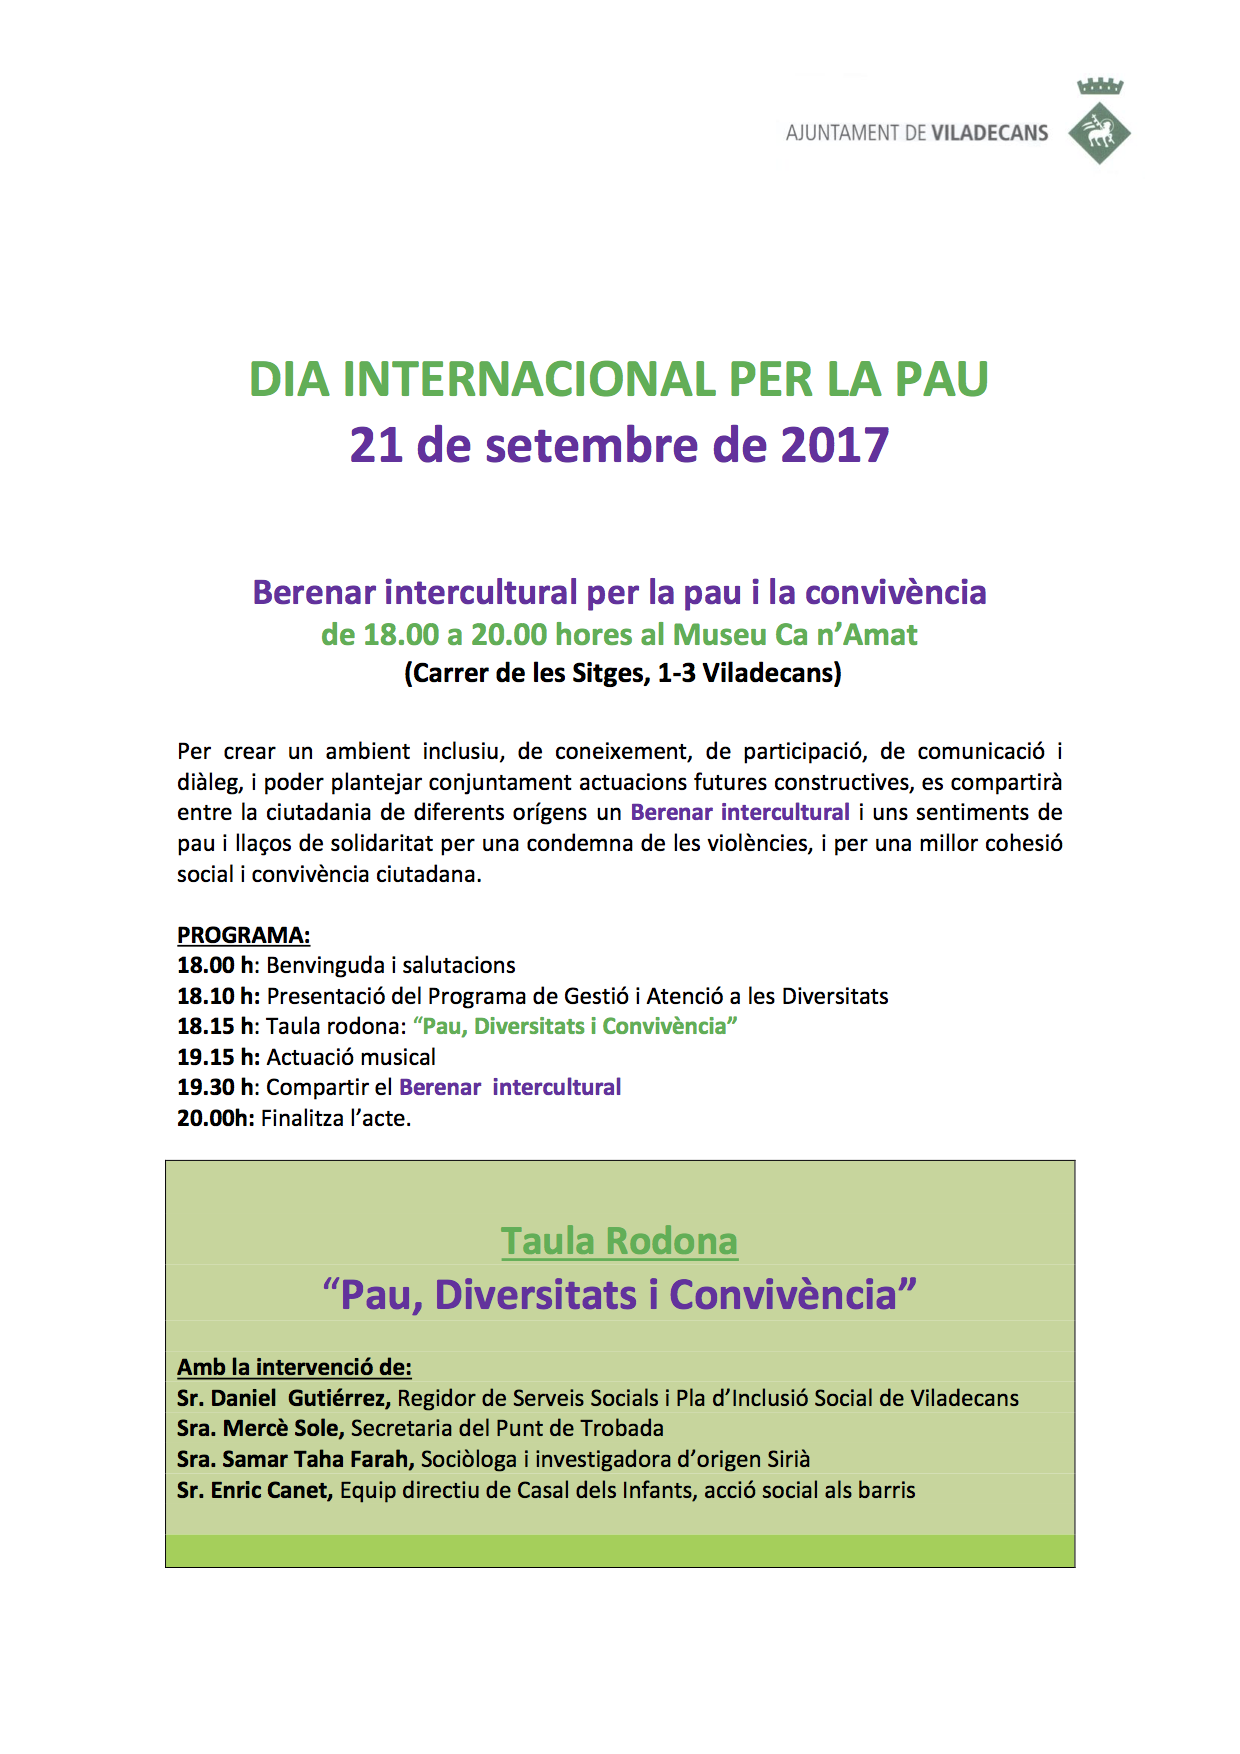 berenar-intercultural-dia-internacional-per-la-pau